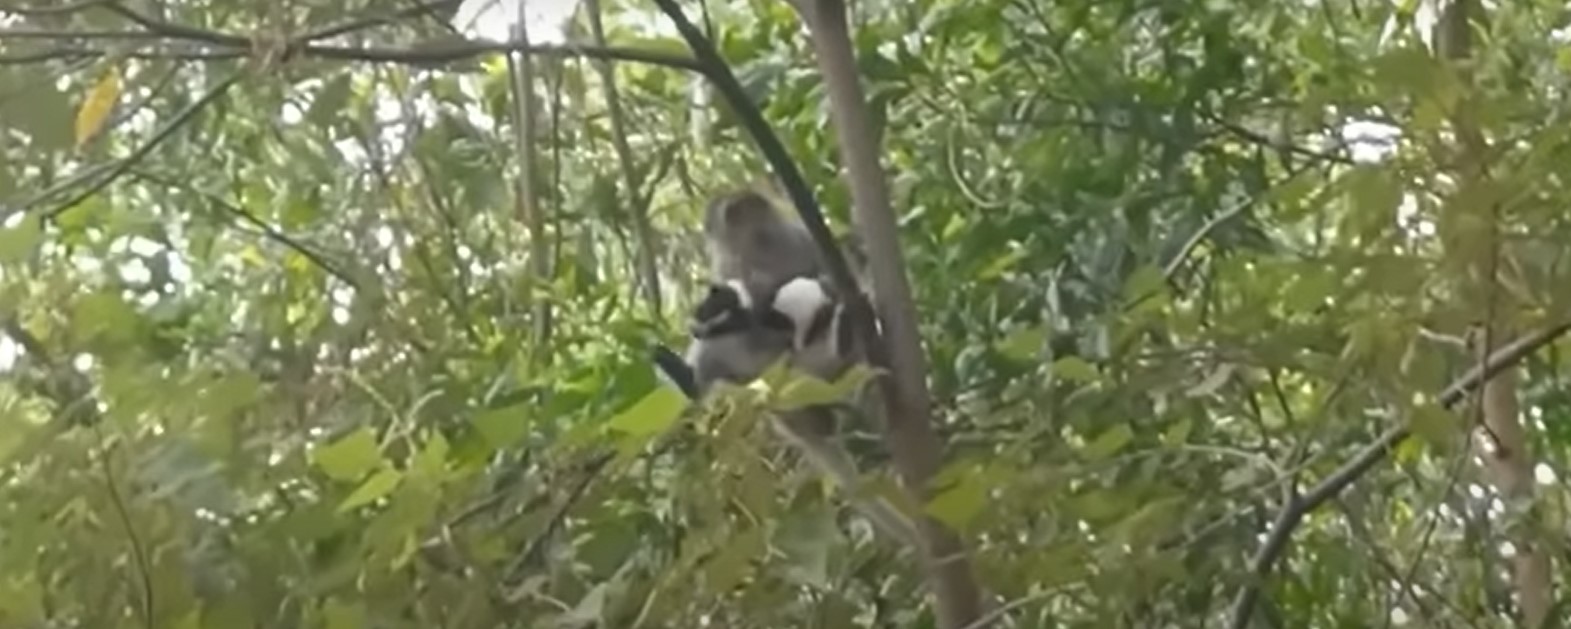 القرد يمسك بالكلب الصغير أعلى الشجرة